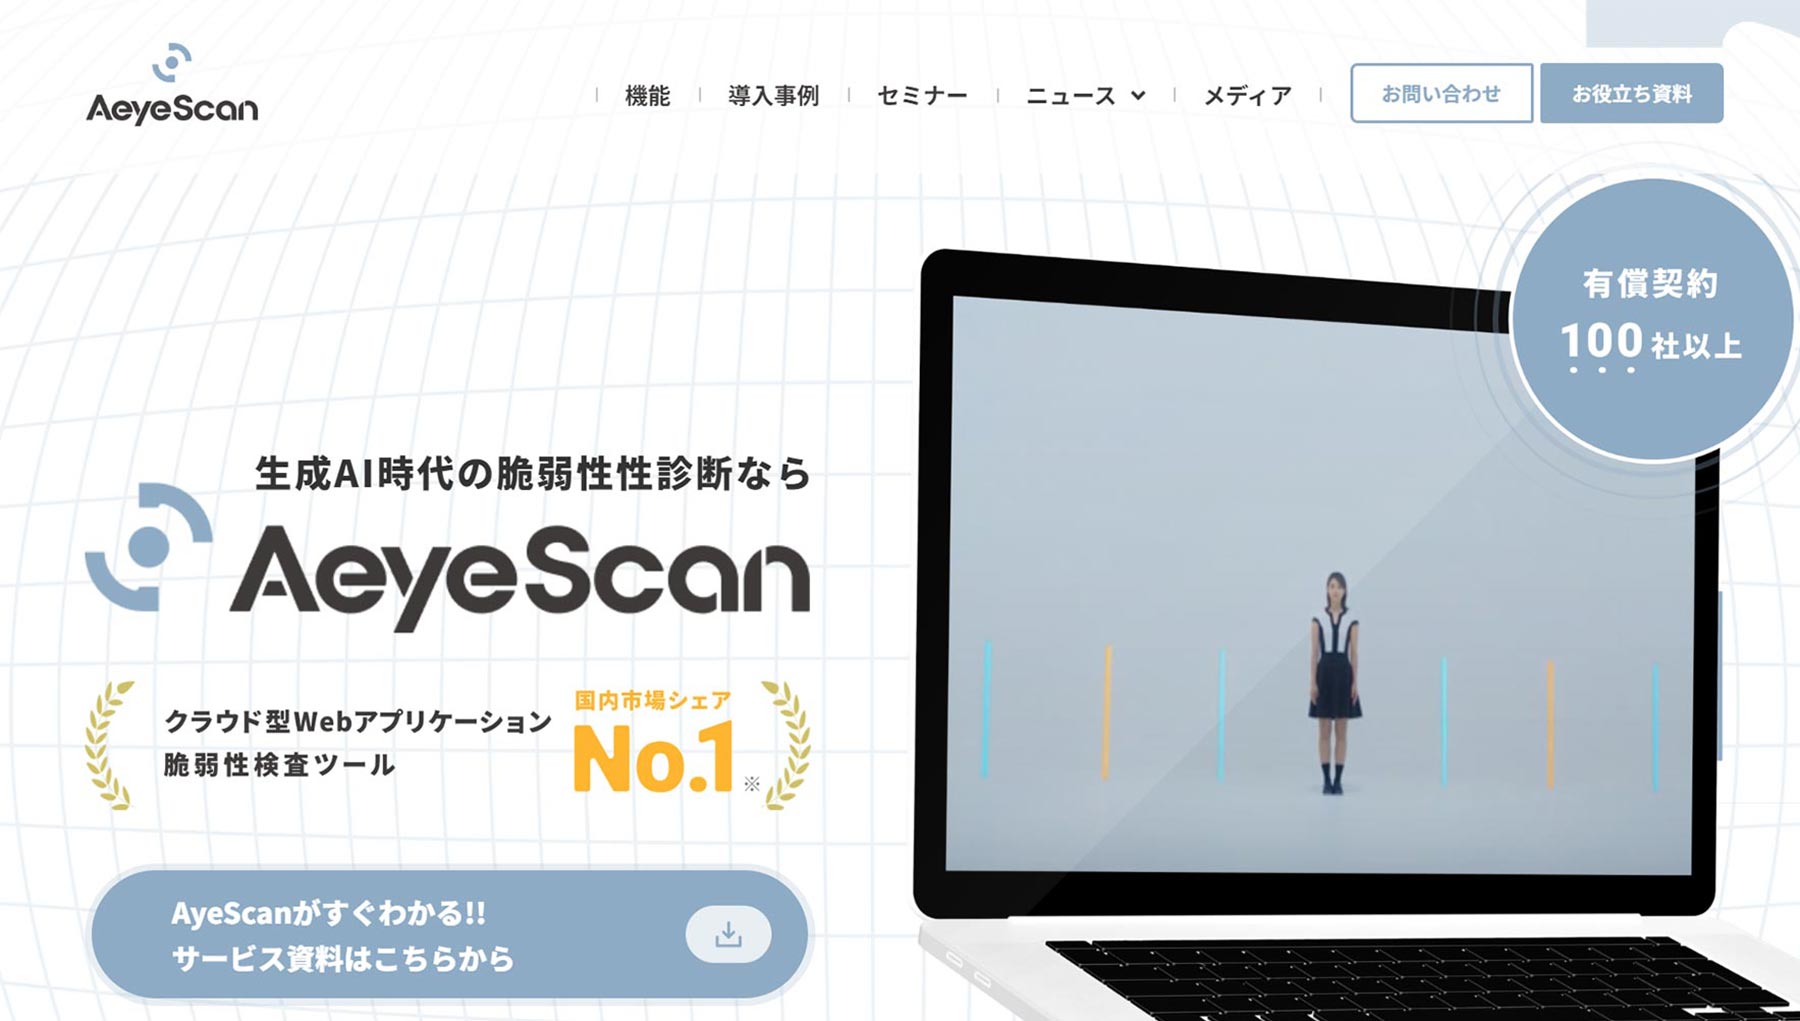 AeyeScan_公式Webサイト